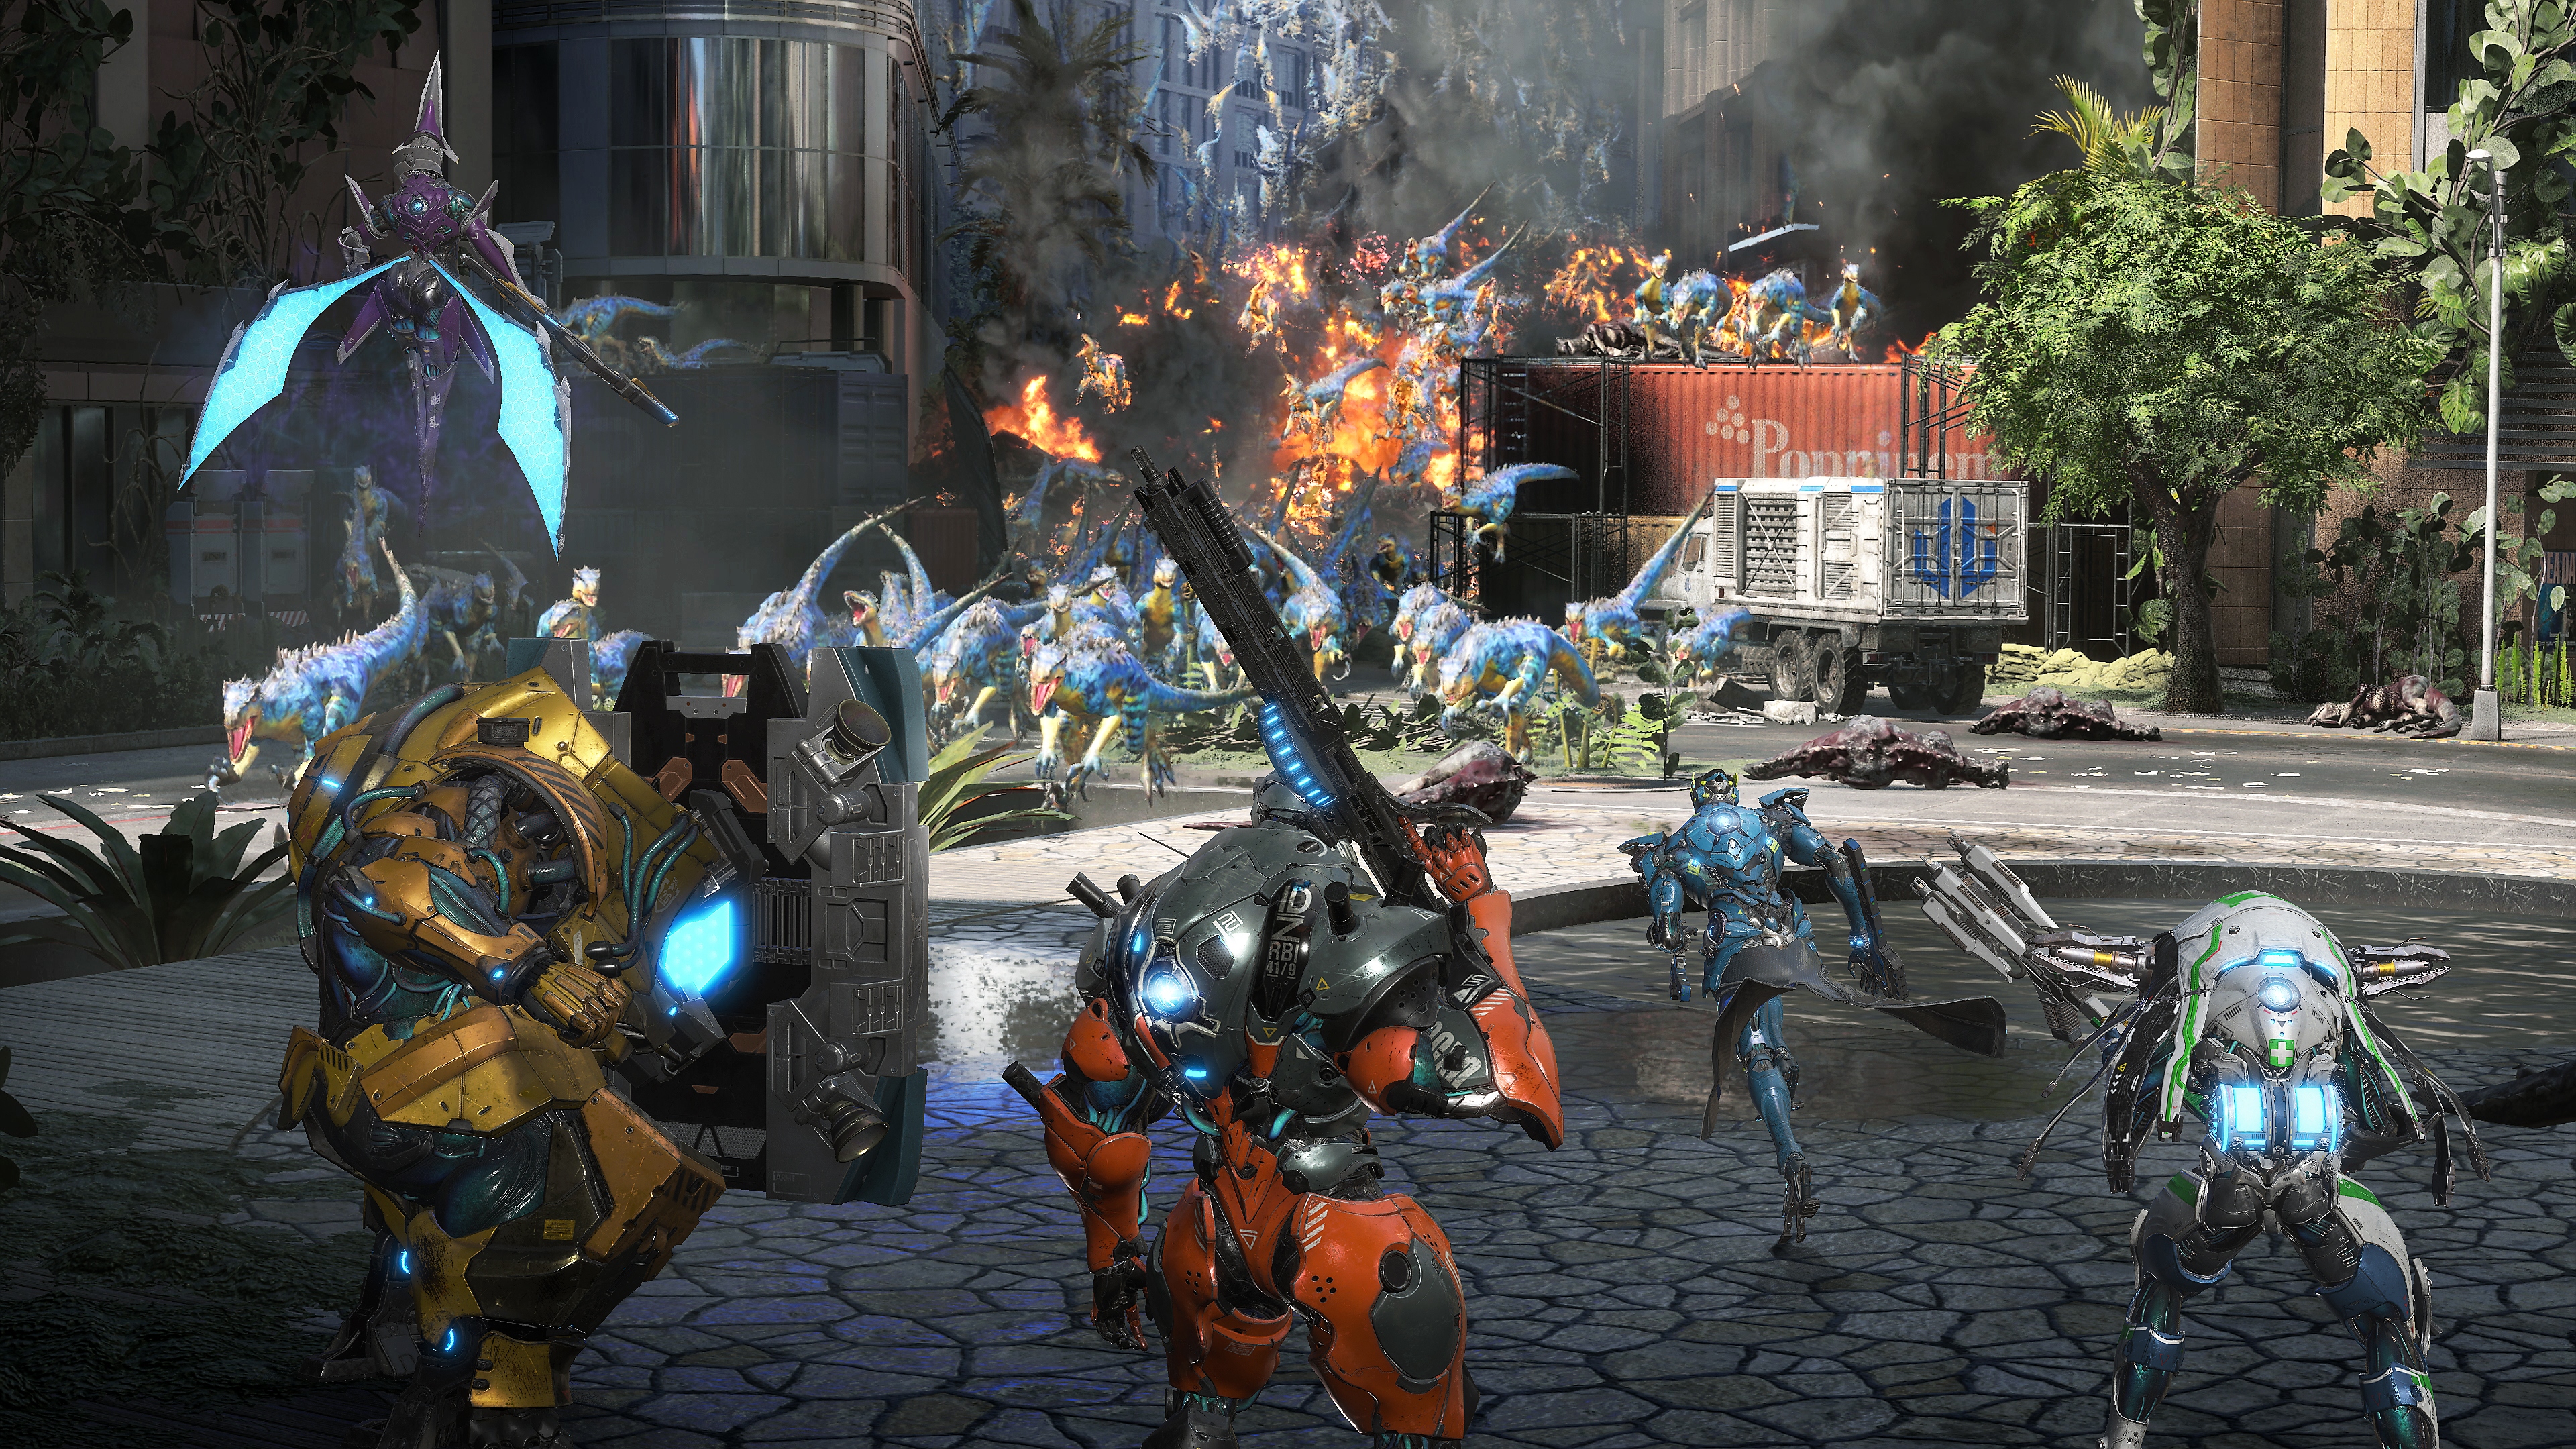 لقطة شاشة للعبة Exoprimal - يظهر فيها حشد من الديناصورات تركض نحو شخصيات آلية تلوح بأسلحة أو دروع